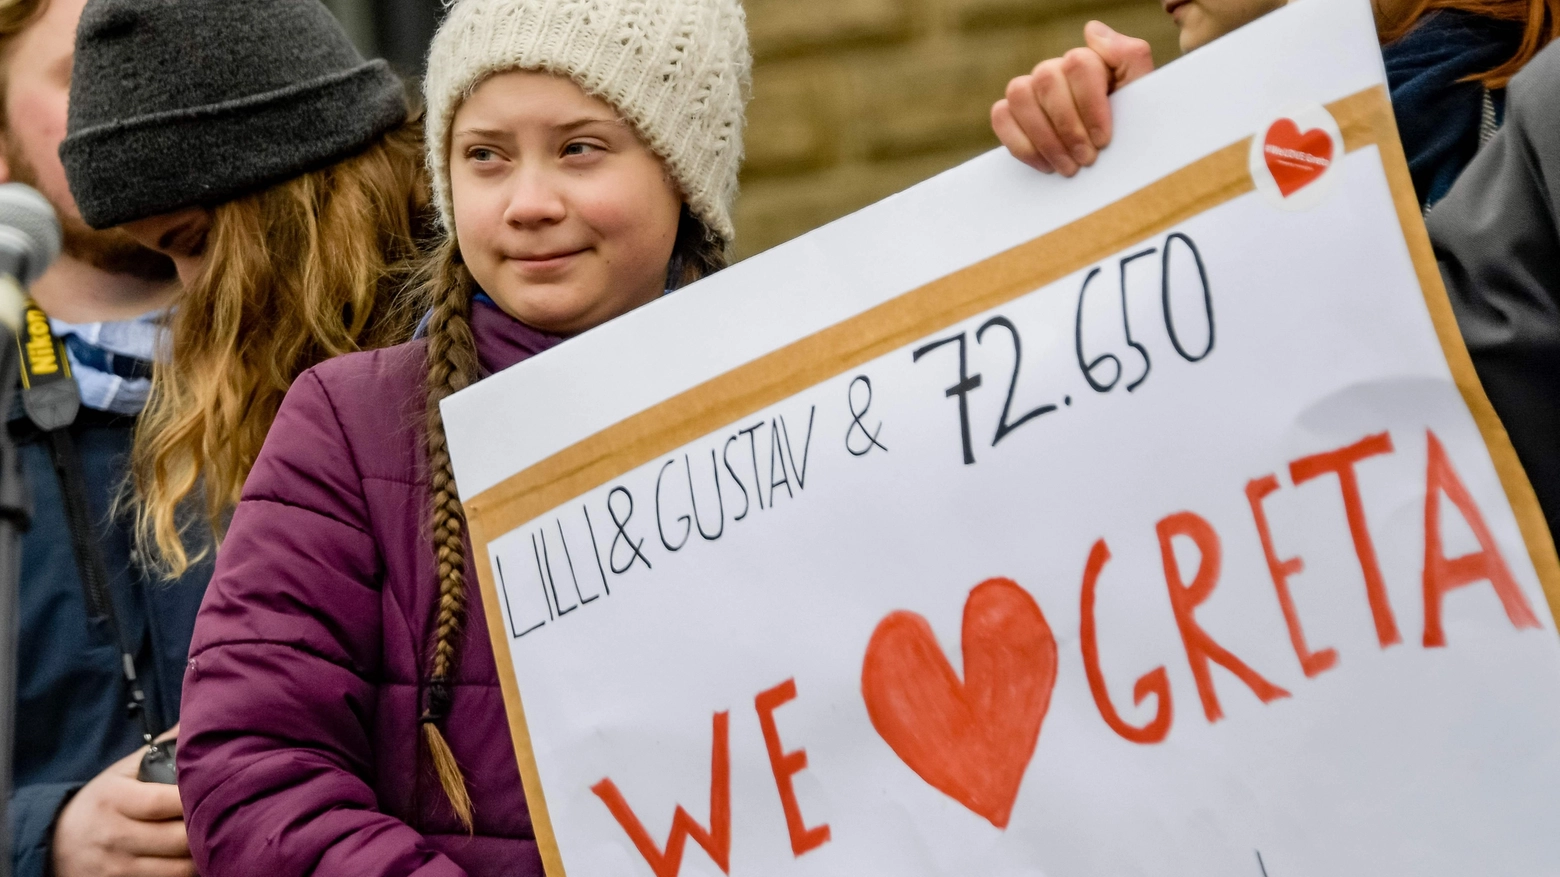 La studentessa svedese Greta Thunberg che ha dato origine al movimento